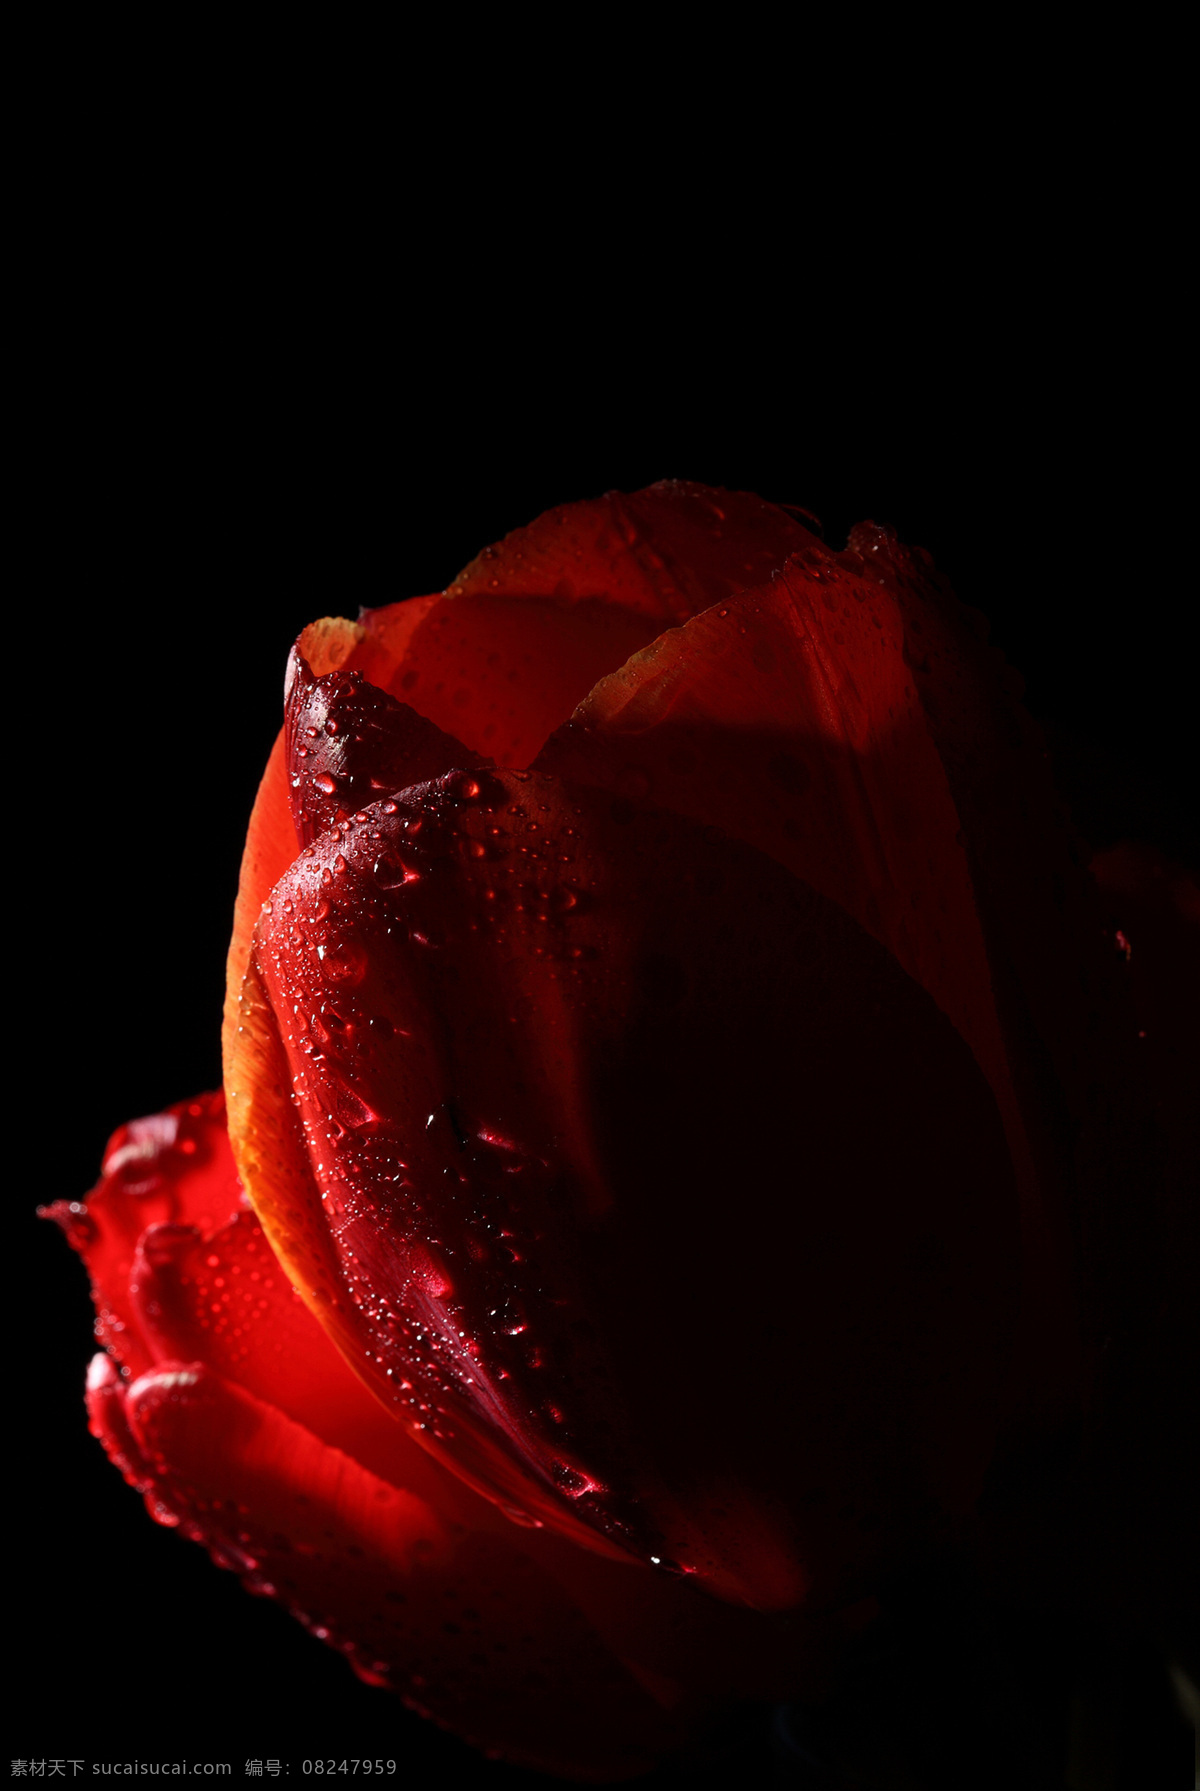 水珠 露珠 花瓣 植物花朵 美丽鲜花 漂亮花朵 花卉 鲜花摄影 红色郁金香 花草树木 生物世界 黑色